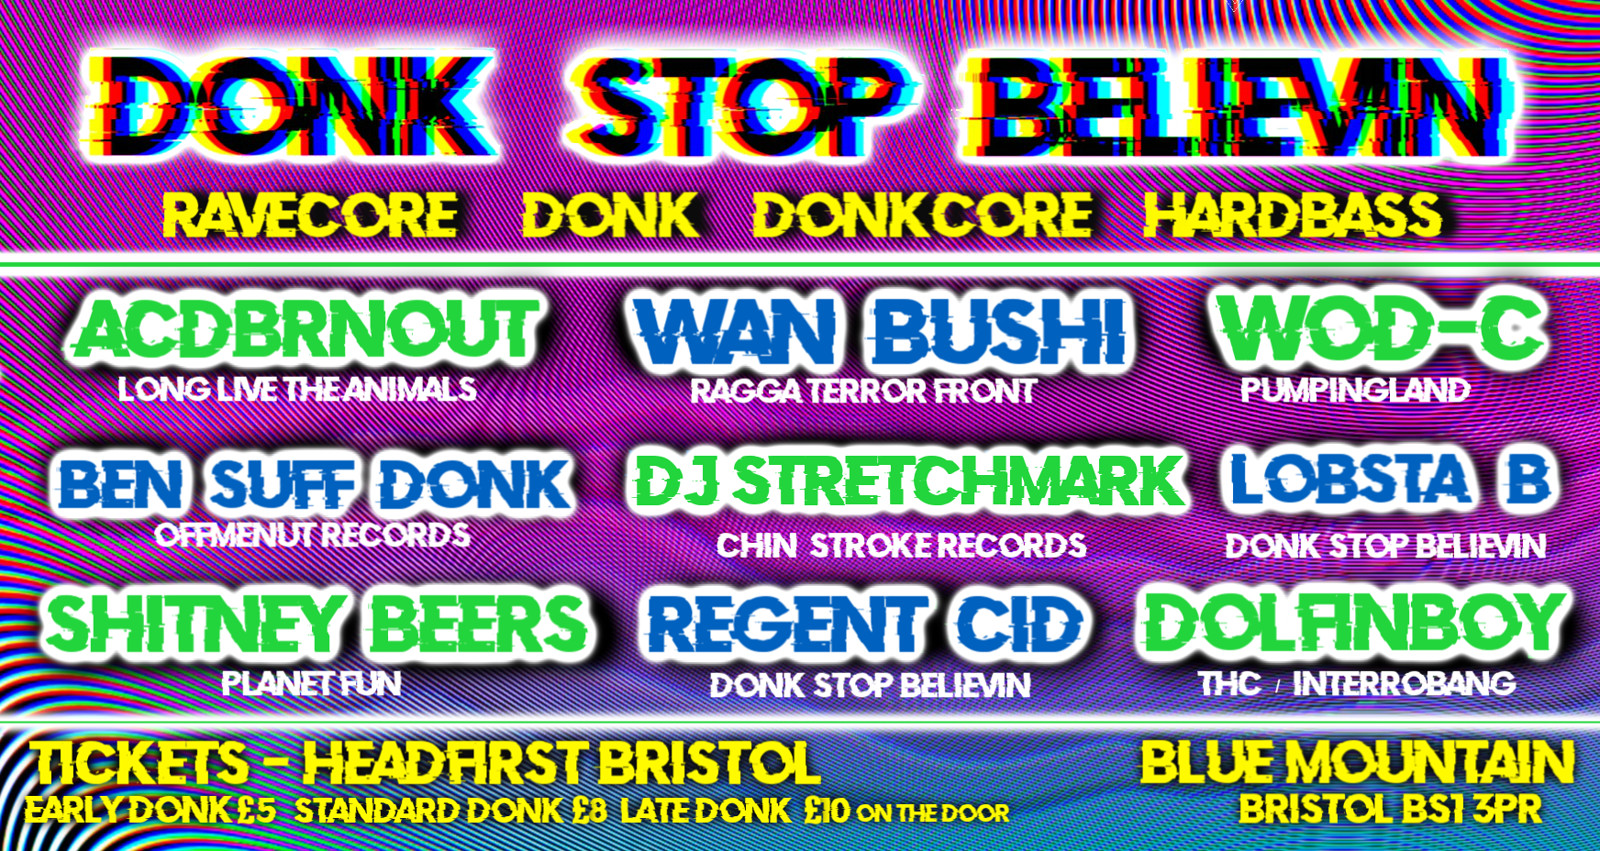 Donk Stop Believin - Wan Bushi / DJ Fingerblast at Blue Mountain